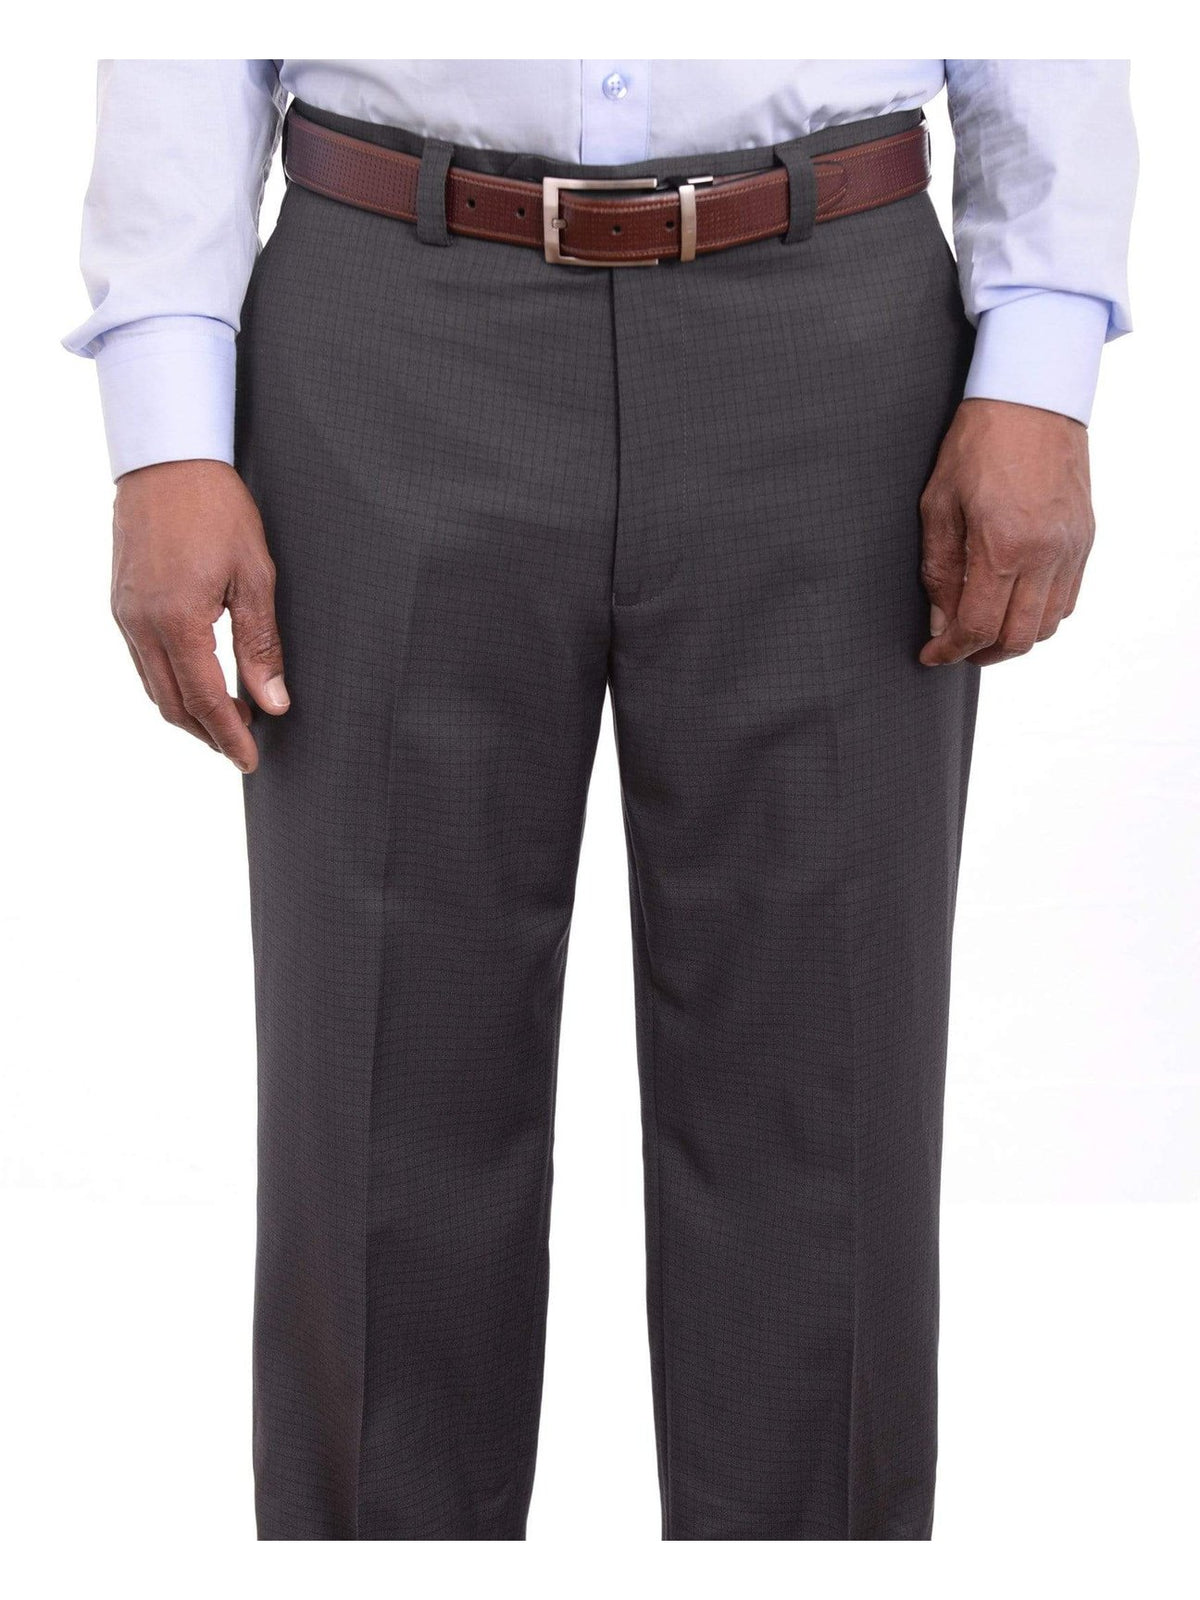 Ralph Lauren PANTS Ralph Lauren Classic Fit Charcoal Gray Check Flat Front Washable Dress Pants